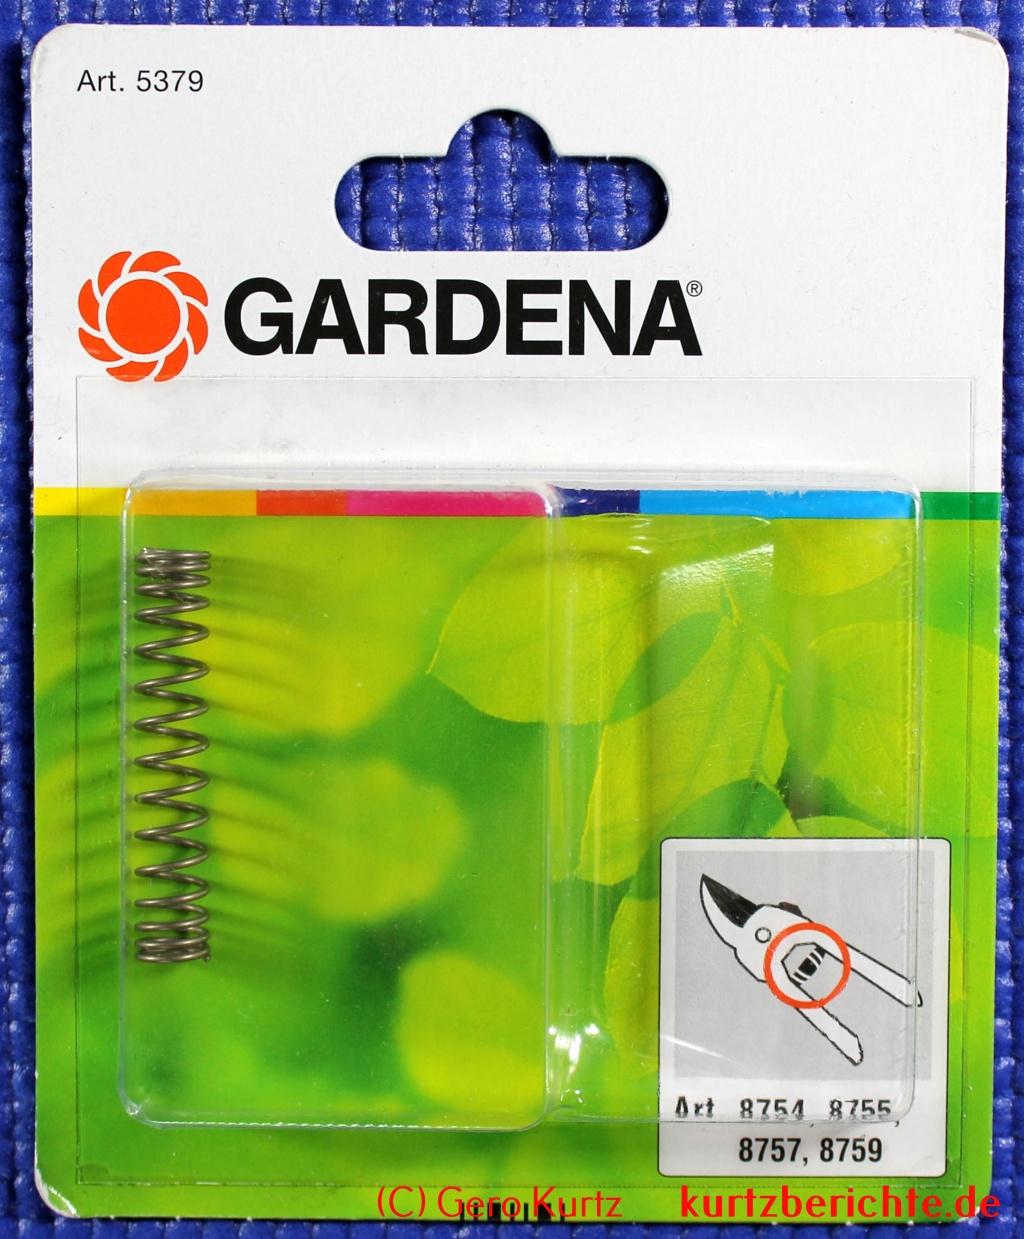 Gardena Druckfeder 5379-20 - Blisterverpackung